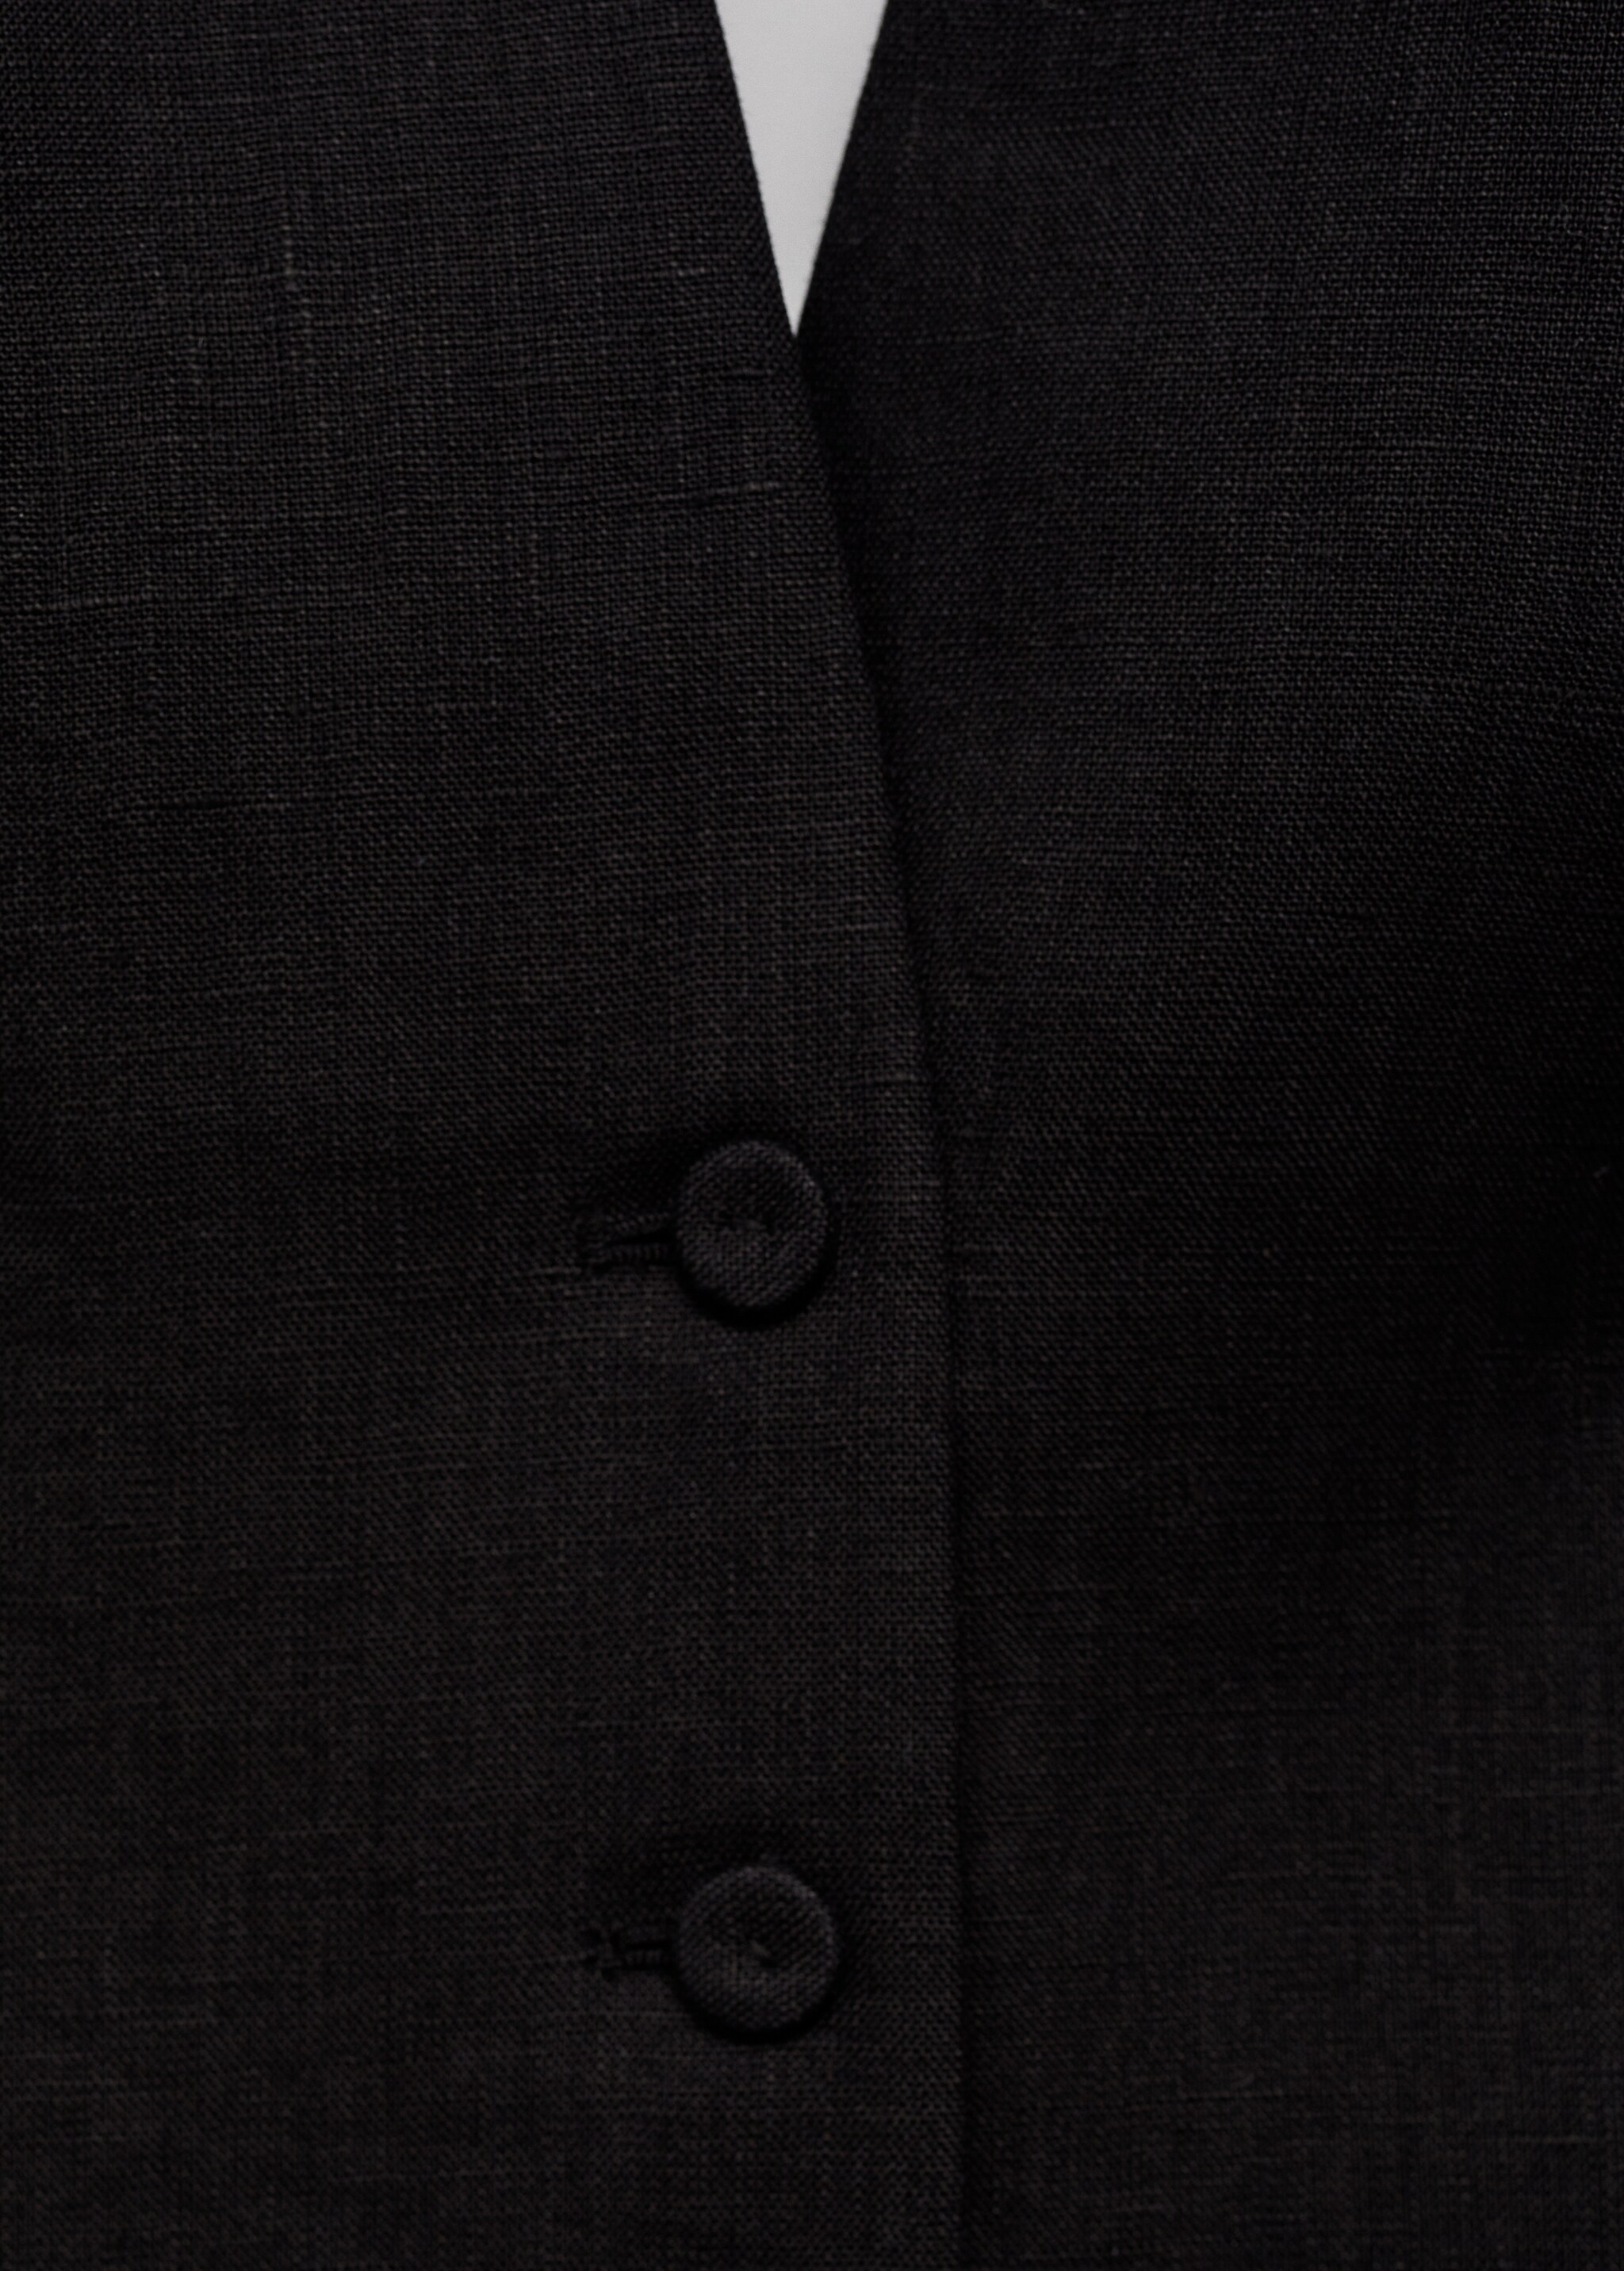 Halter neck linen waistcoat - Details of the article 8